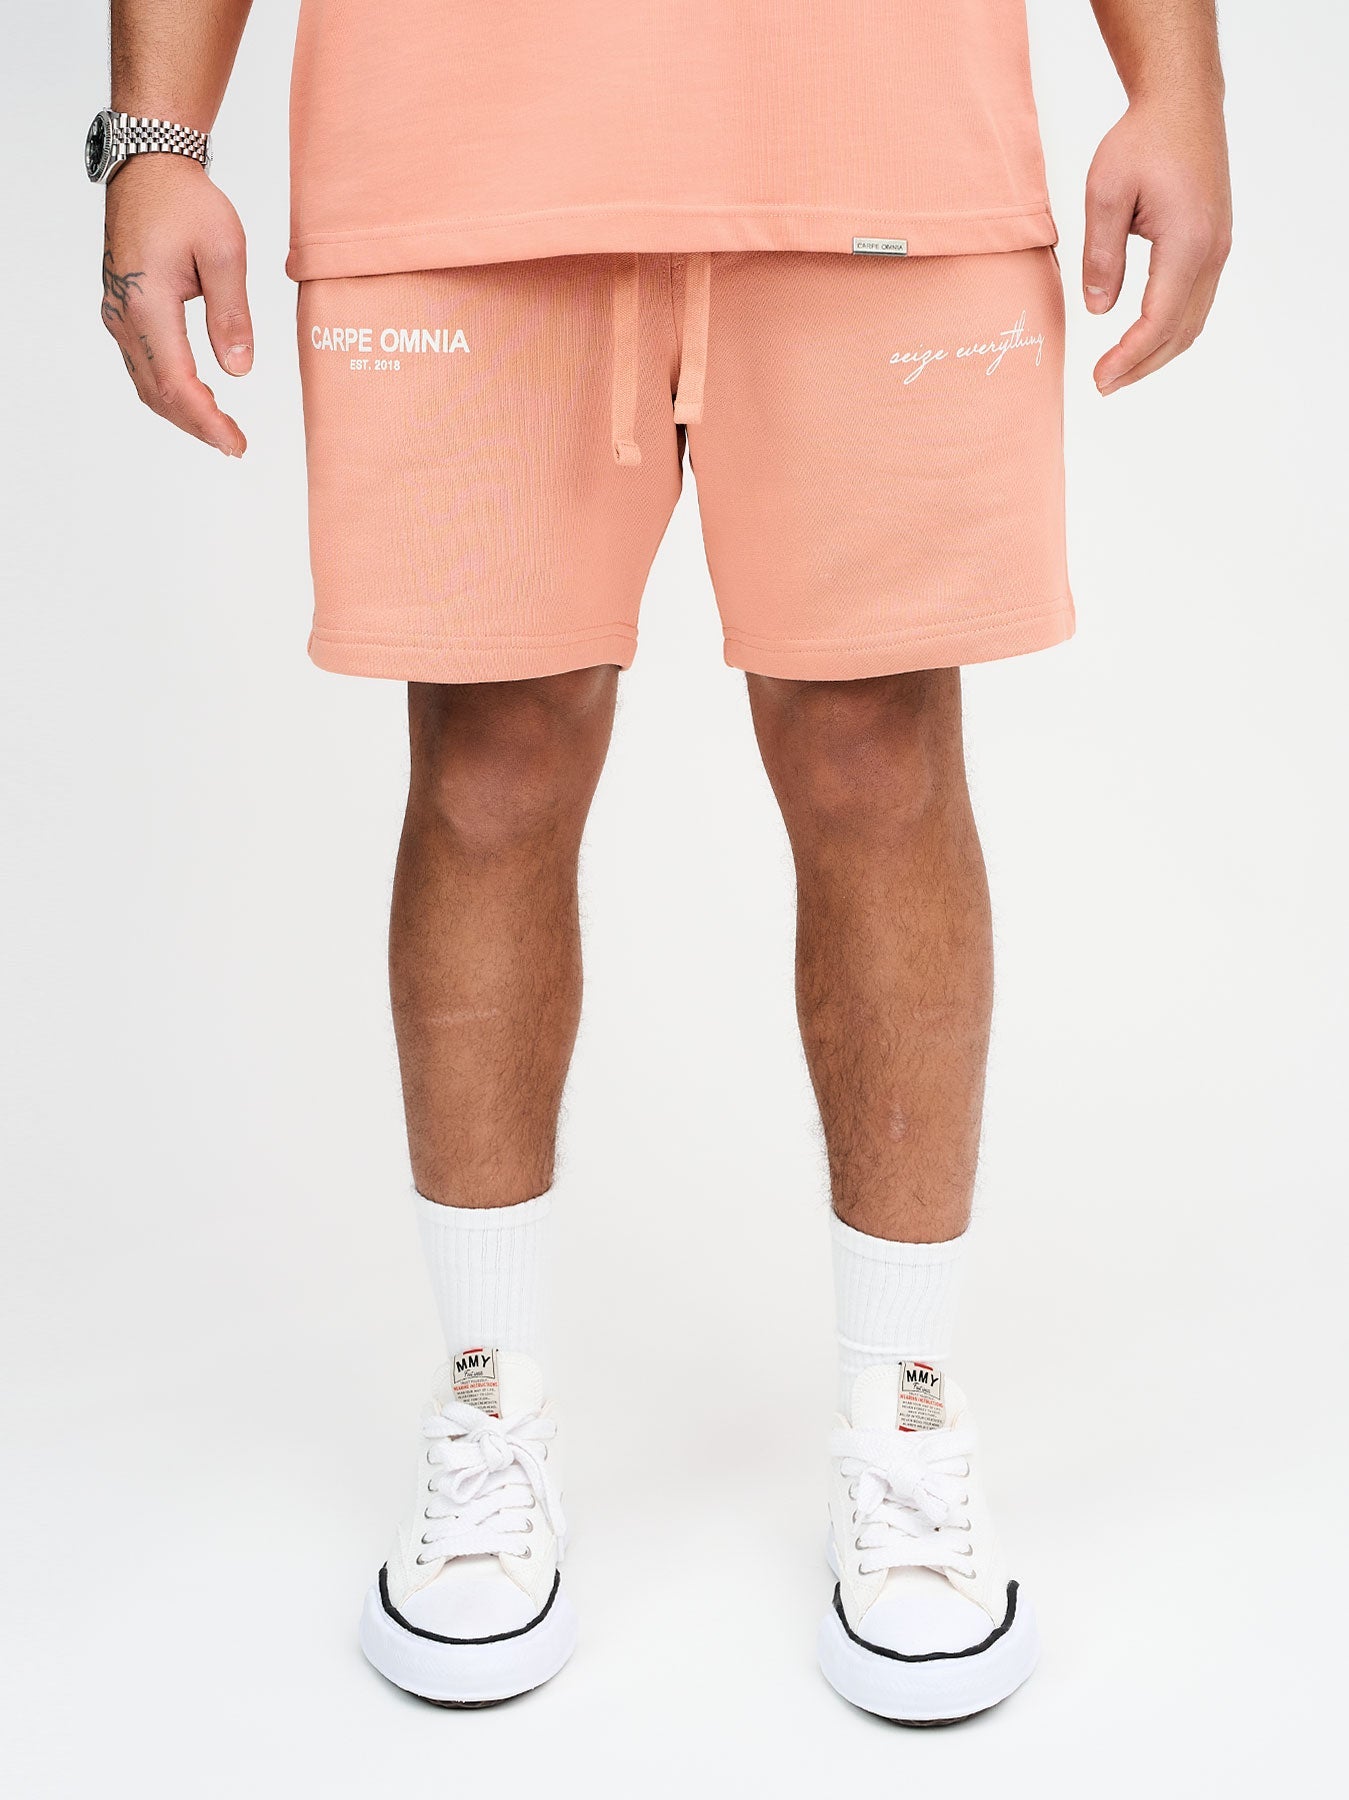 Definition 2.0 Shorts Peach